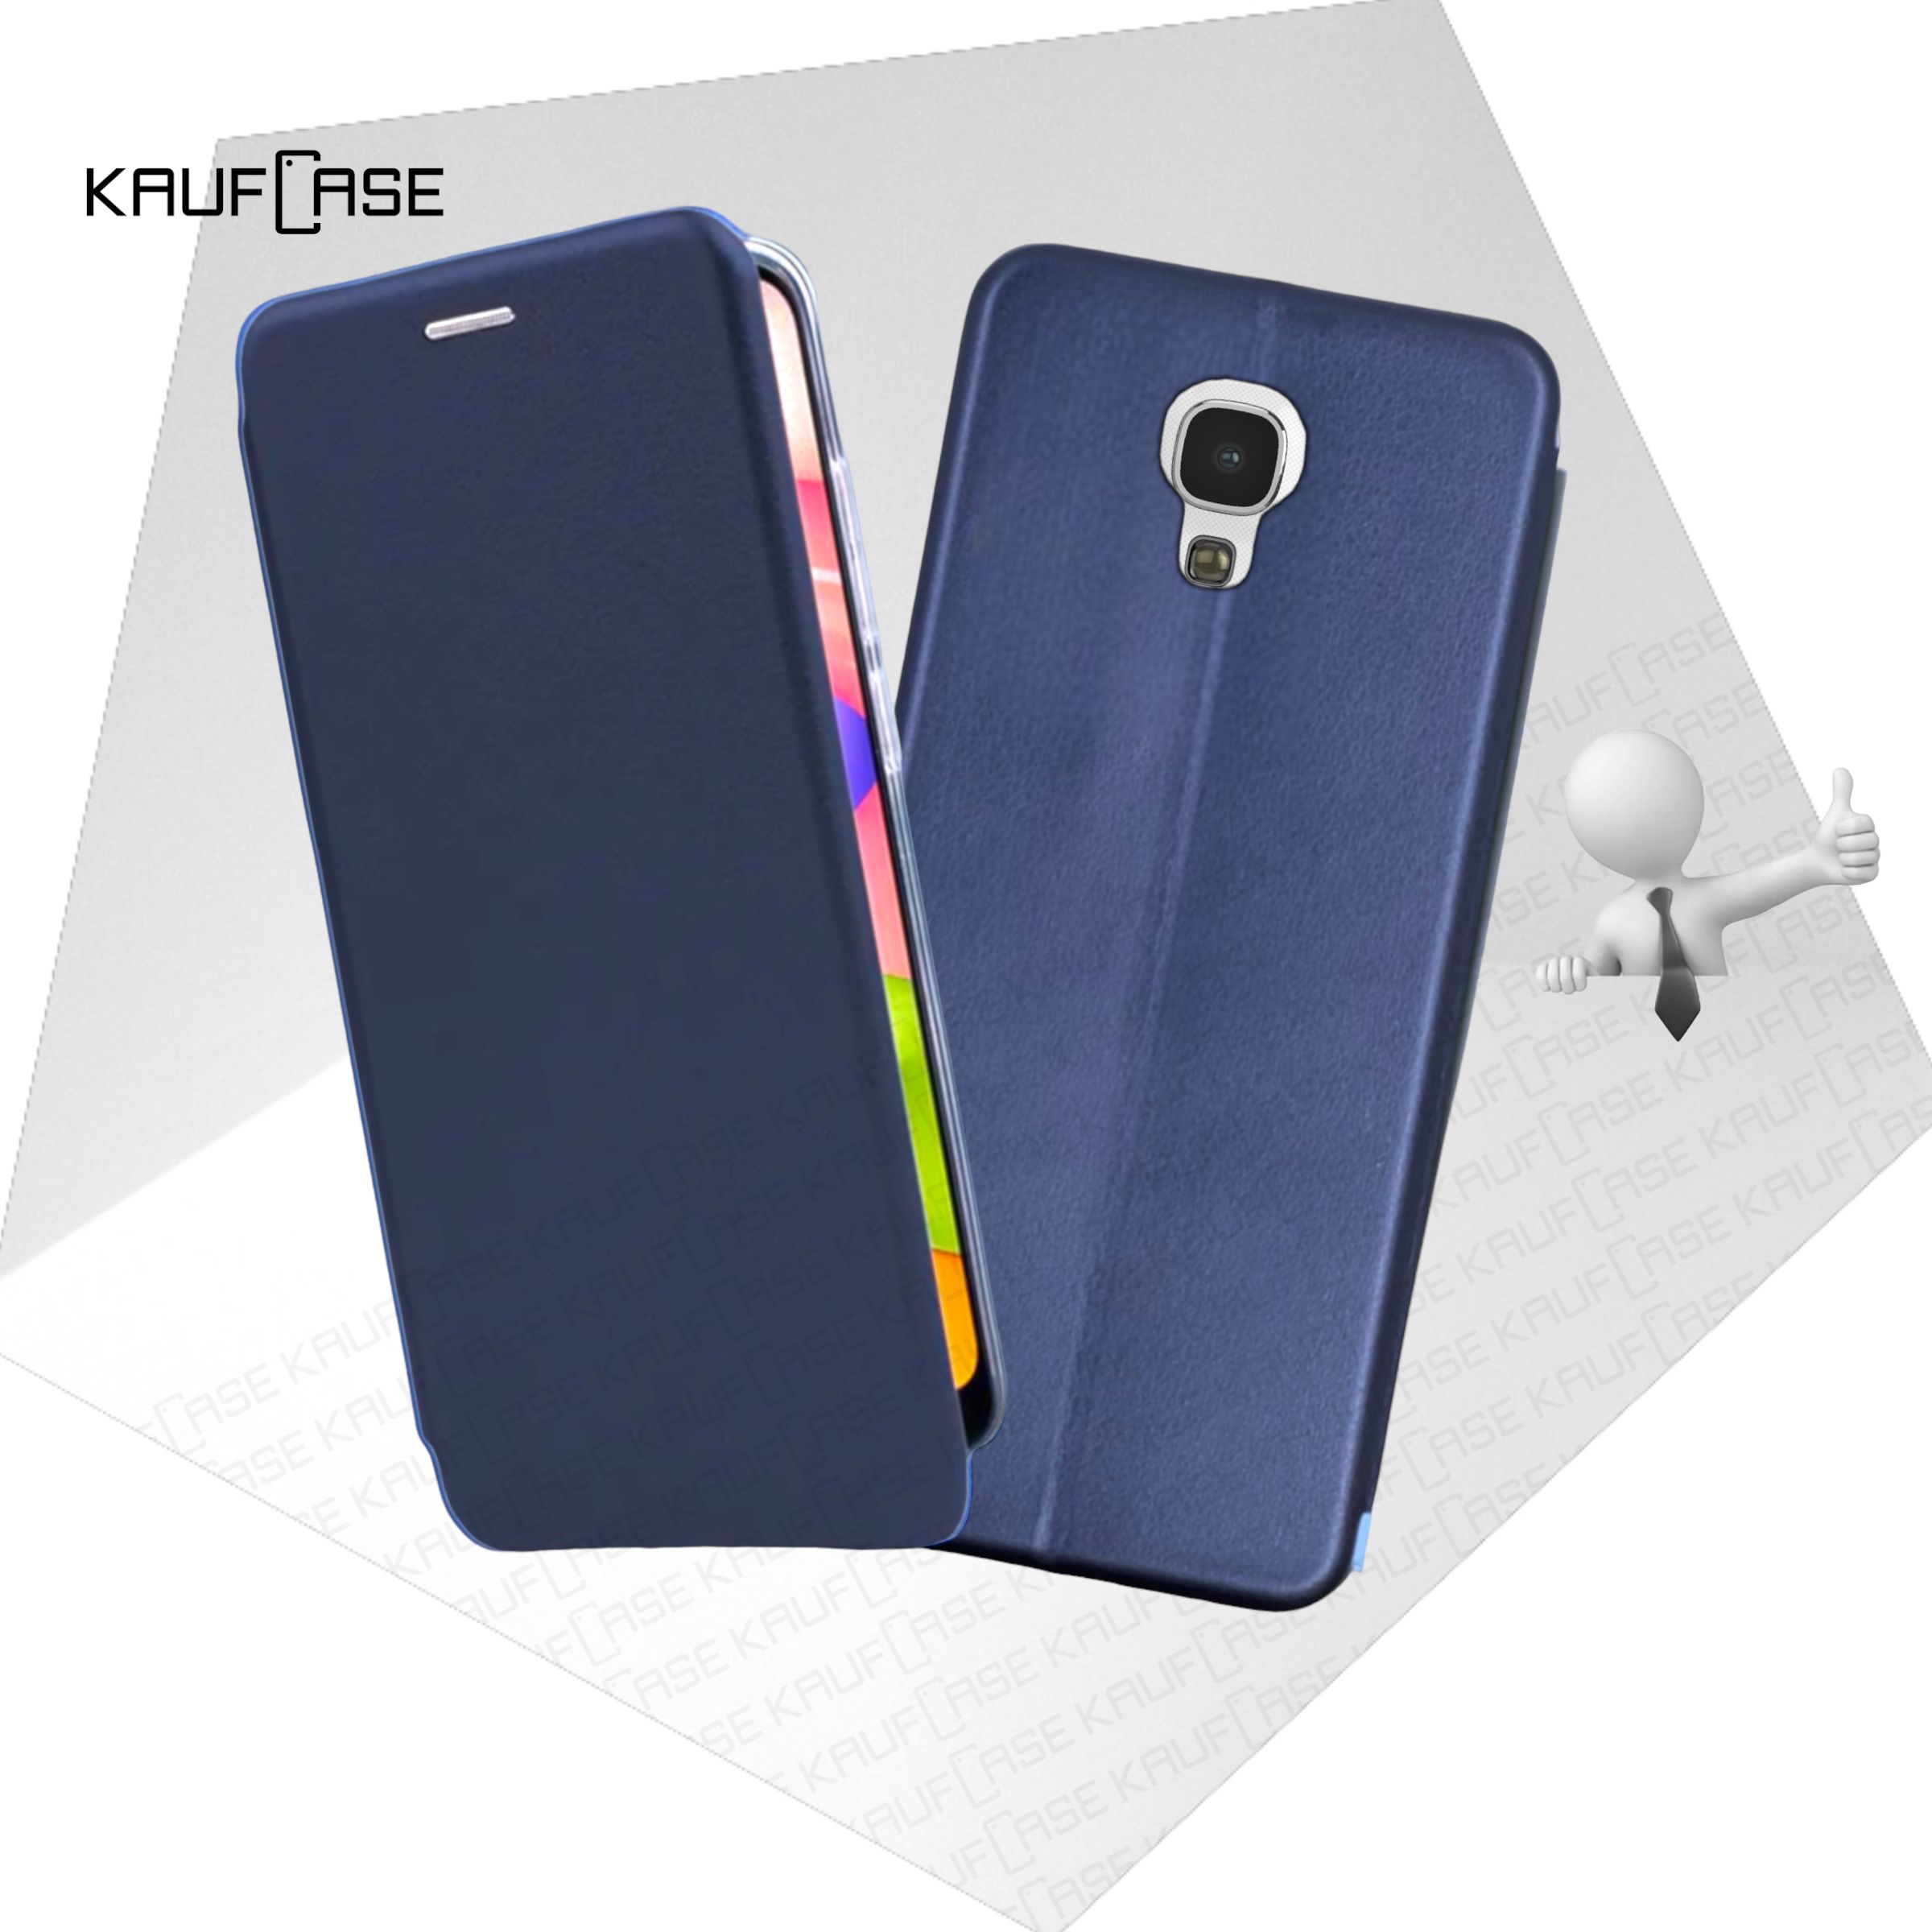 Чехол книжка KaufCase для телефона Samsung S4 (I9500) (5"), темно-синий. Трансфомер